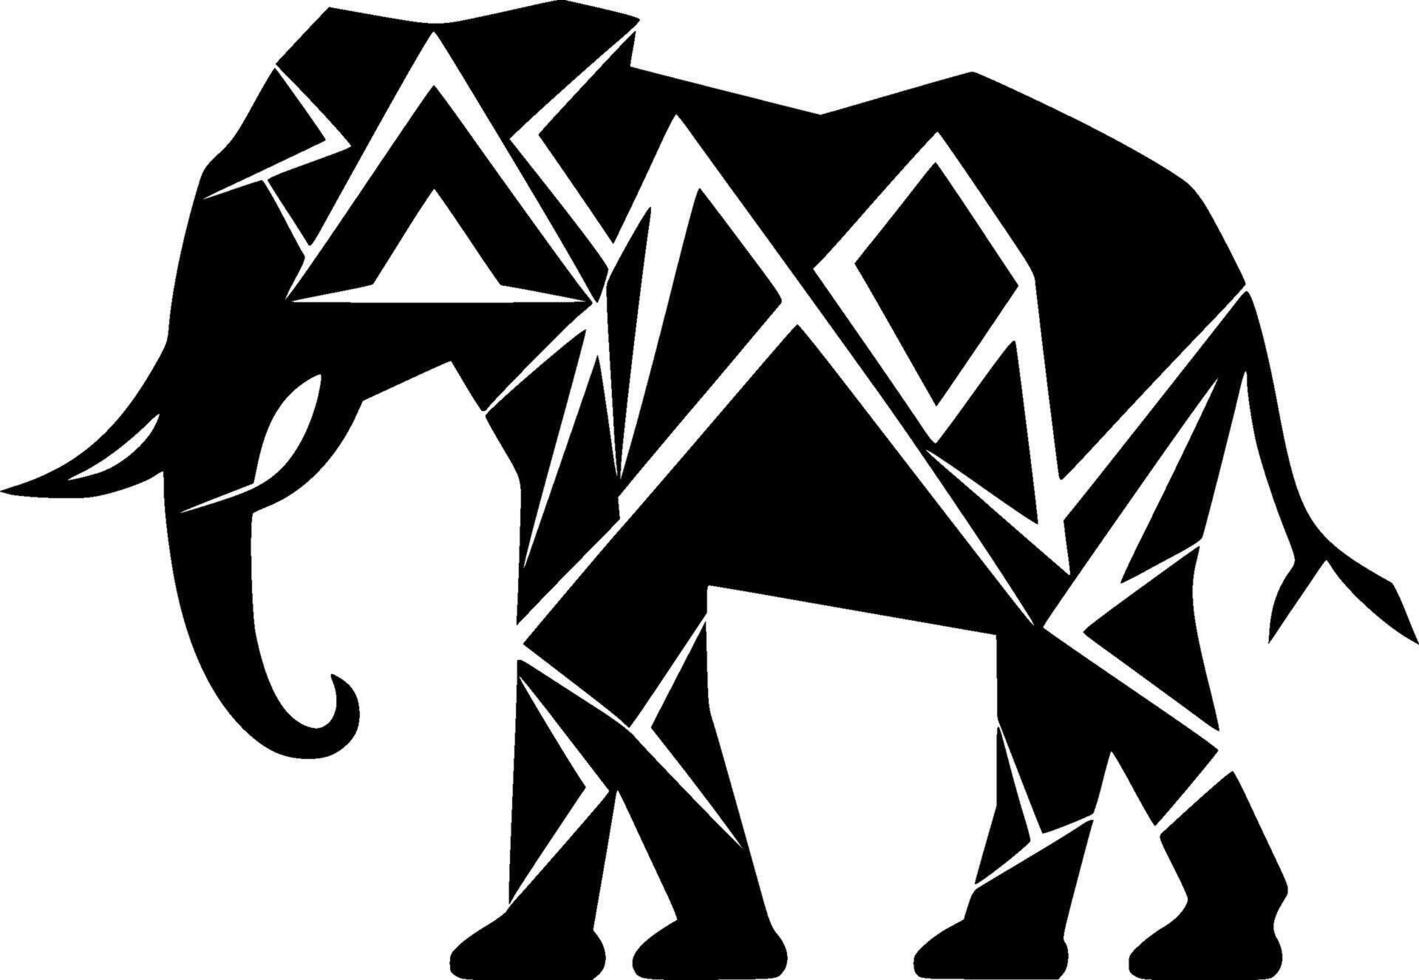 elefant, minimalistisk och enkel silhuett - vektor illustration